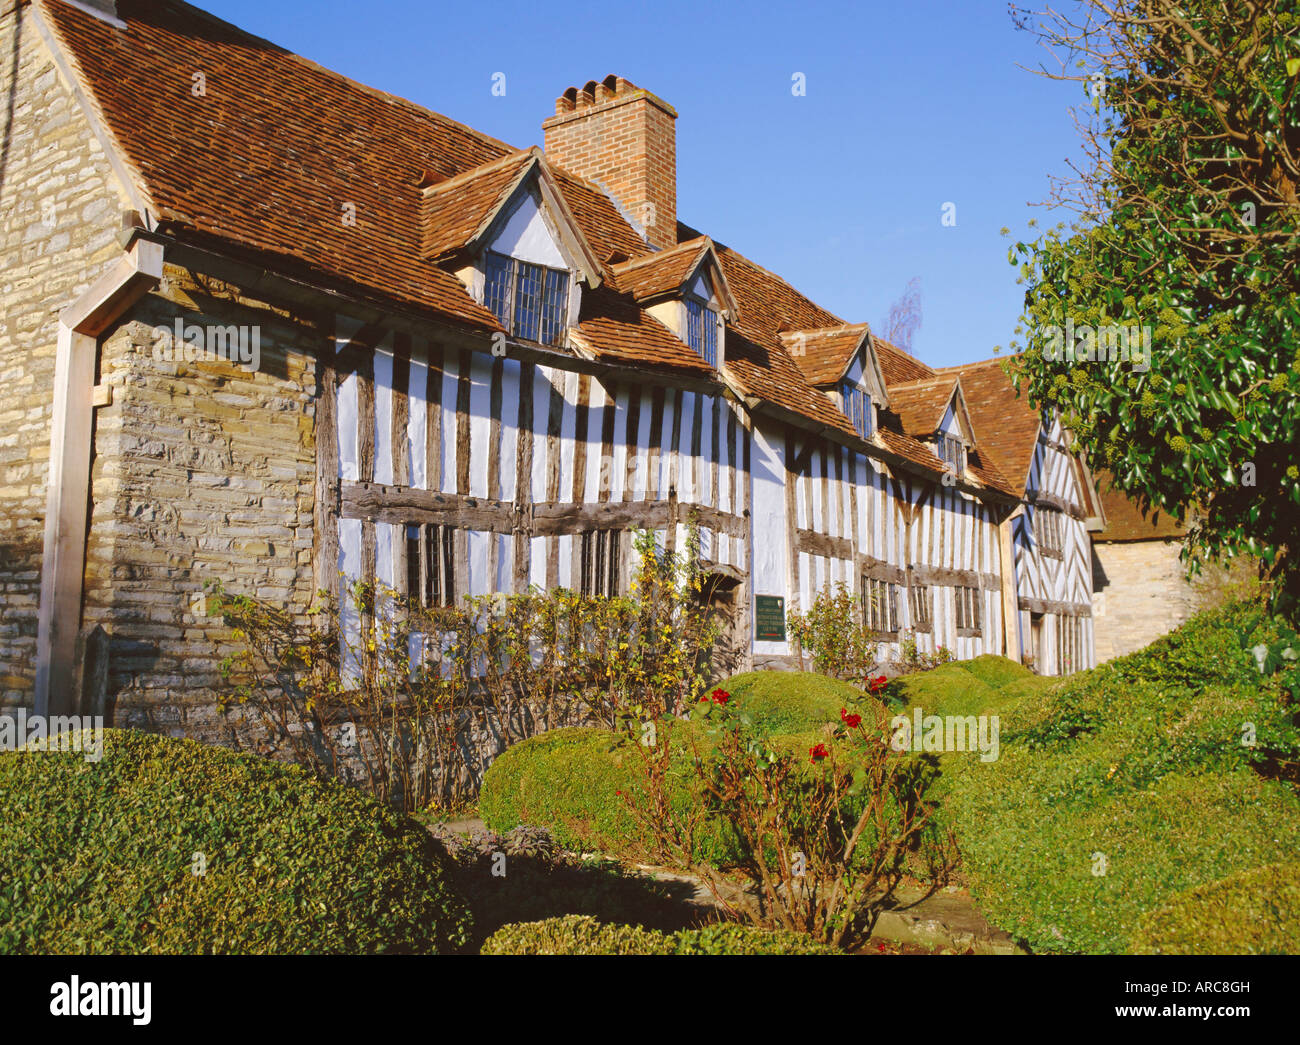 Mary Arden's Cottage, lieu de naissance de Shakespeare, la mère de Shottery, près de Stratford-upon-Avon, Warwickshire, Angleterre, Royaume-Uni, Europe Banque D'Images